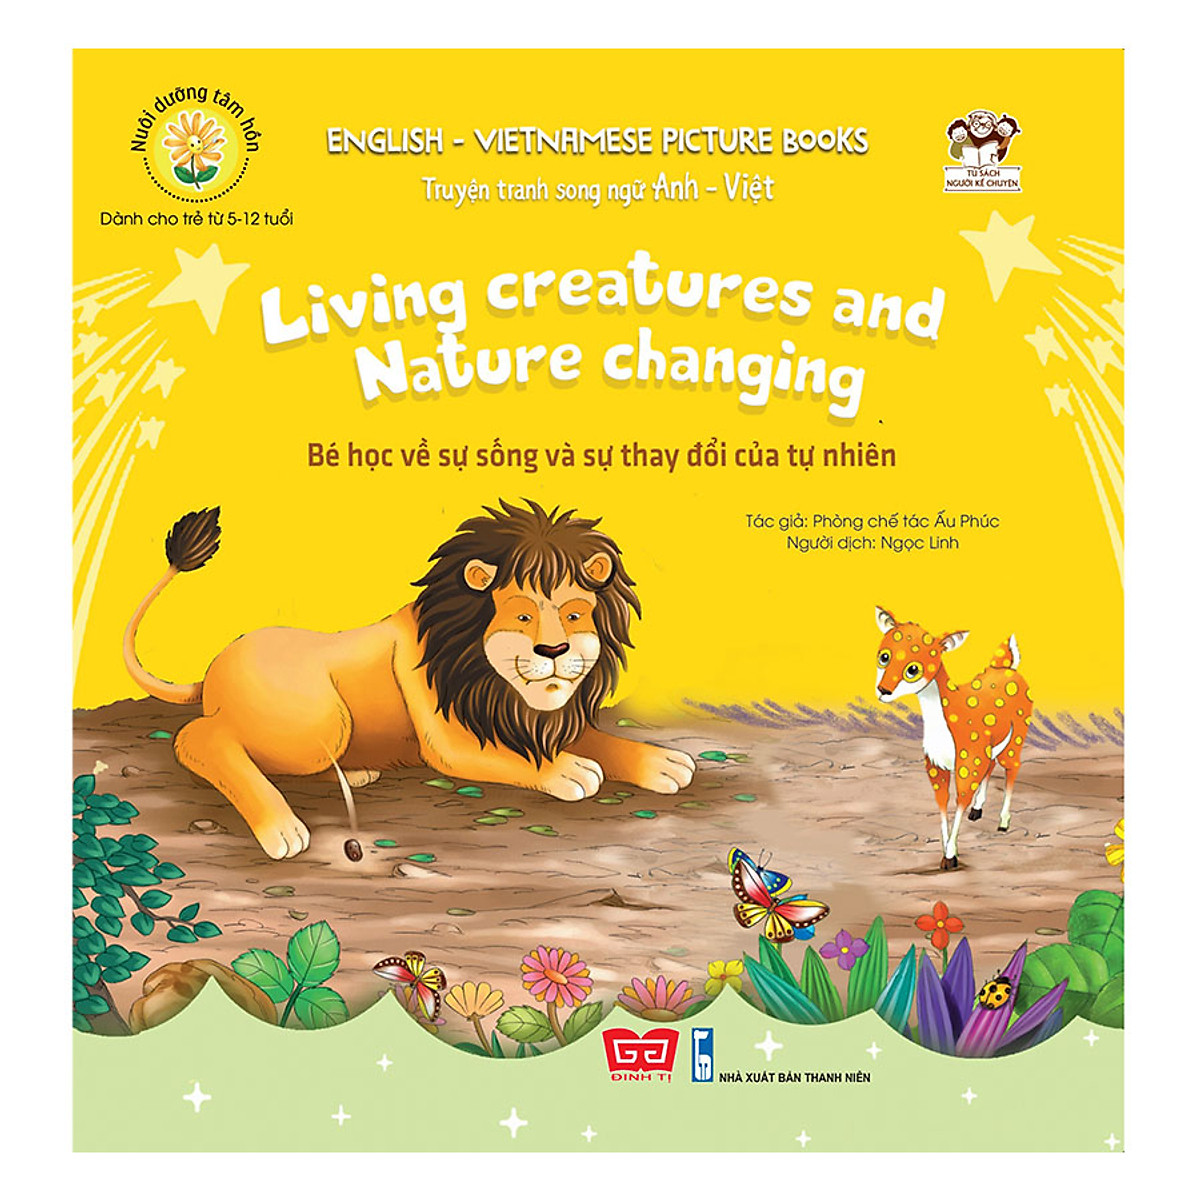 Truyện tranh SN Anh - Việt - Bé học về sự sống và sự thay đổi của tự nhiên (Living creatures and Nature changing)